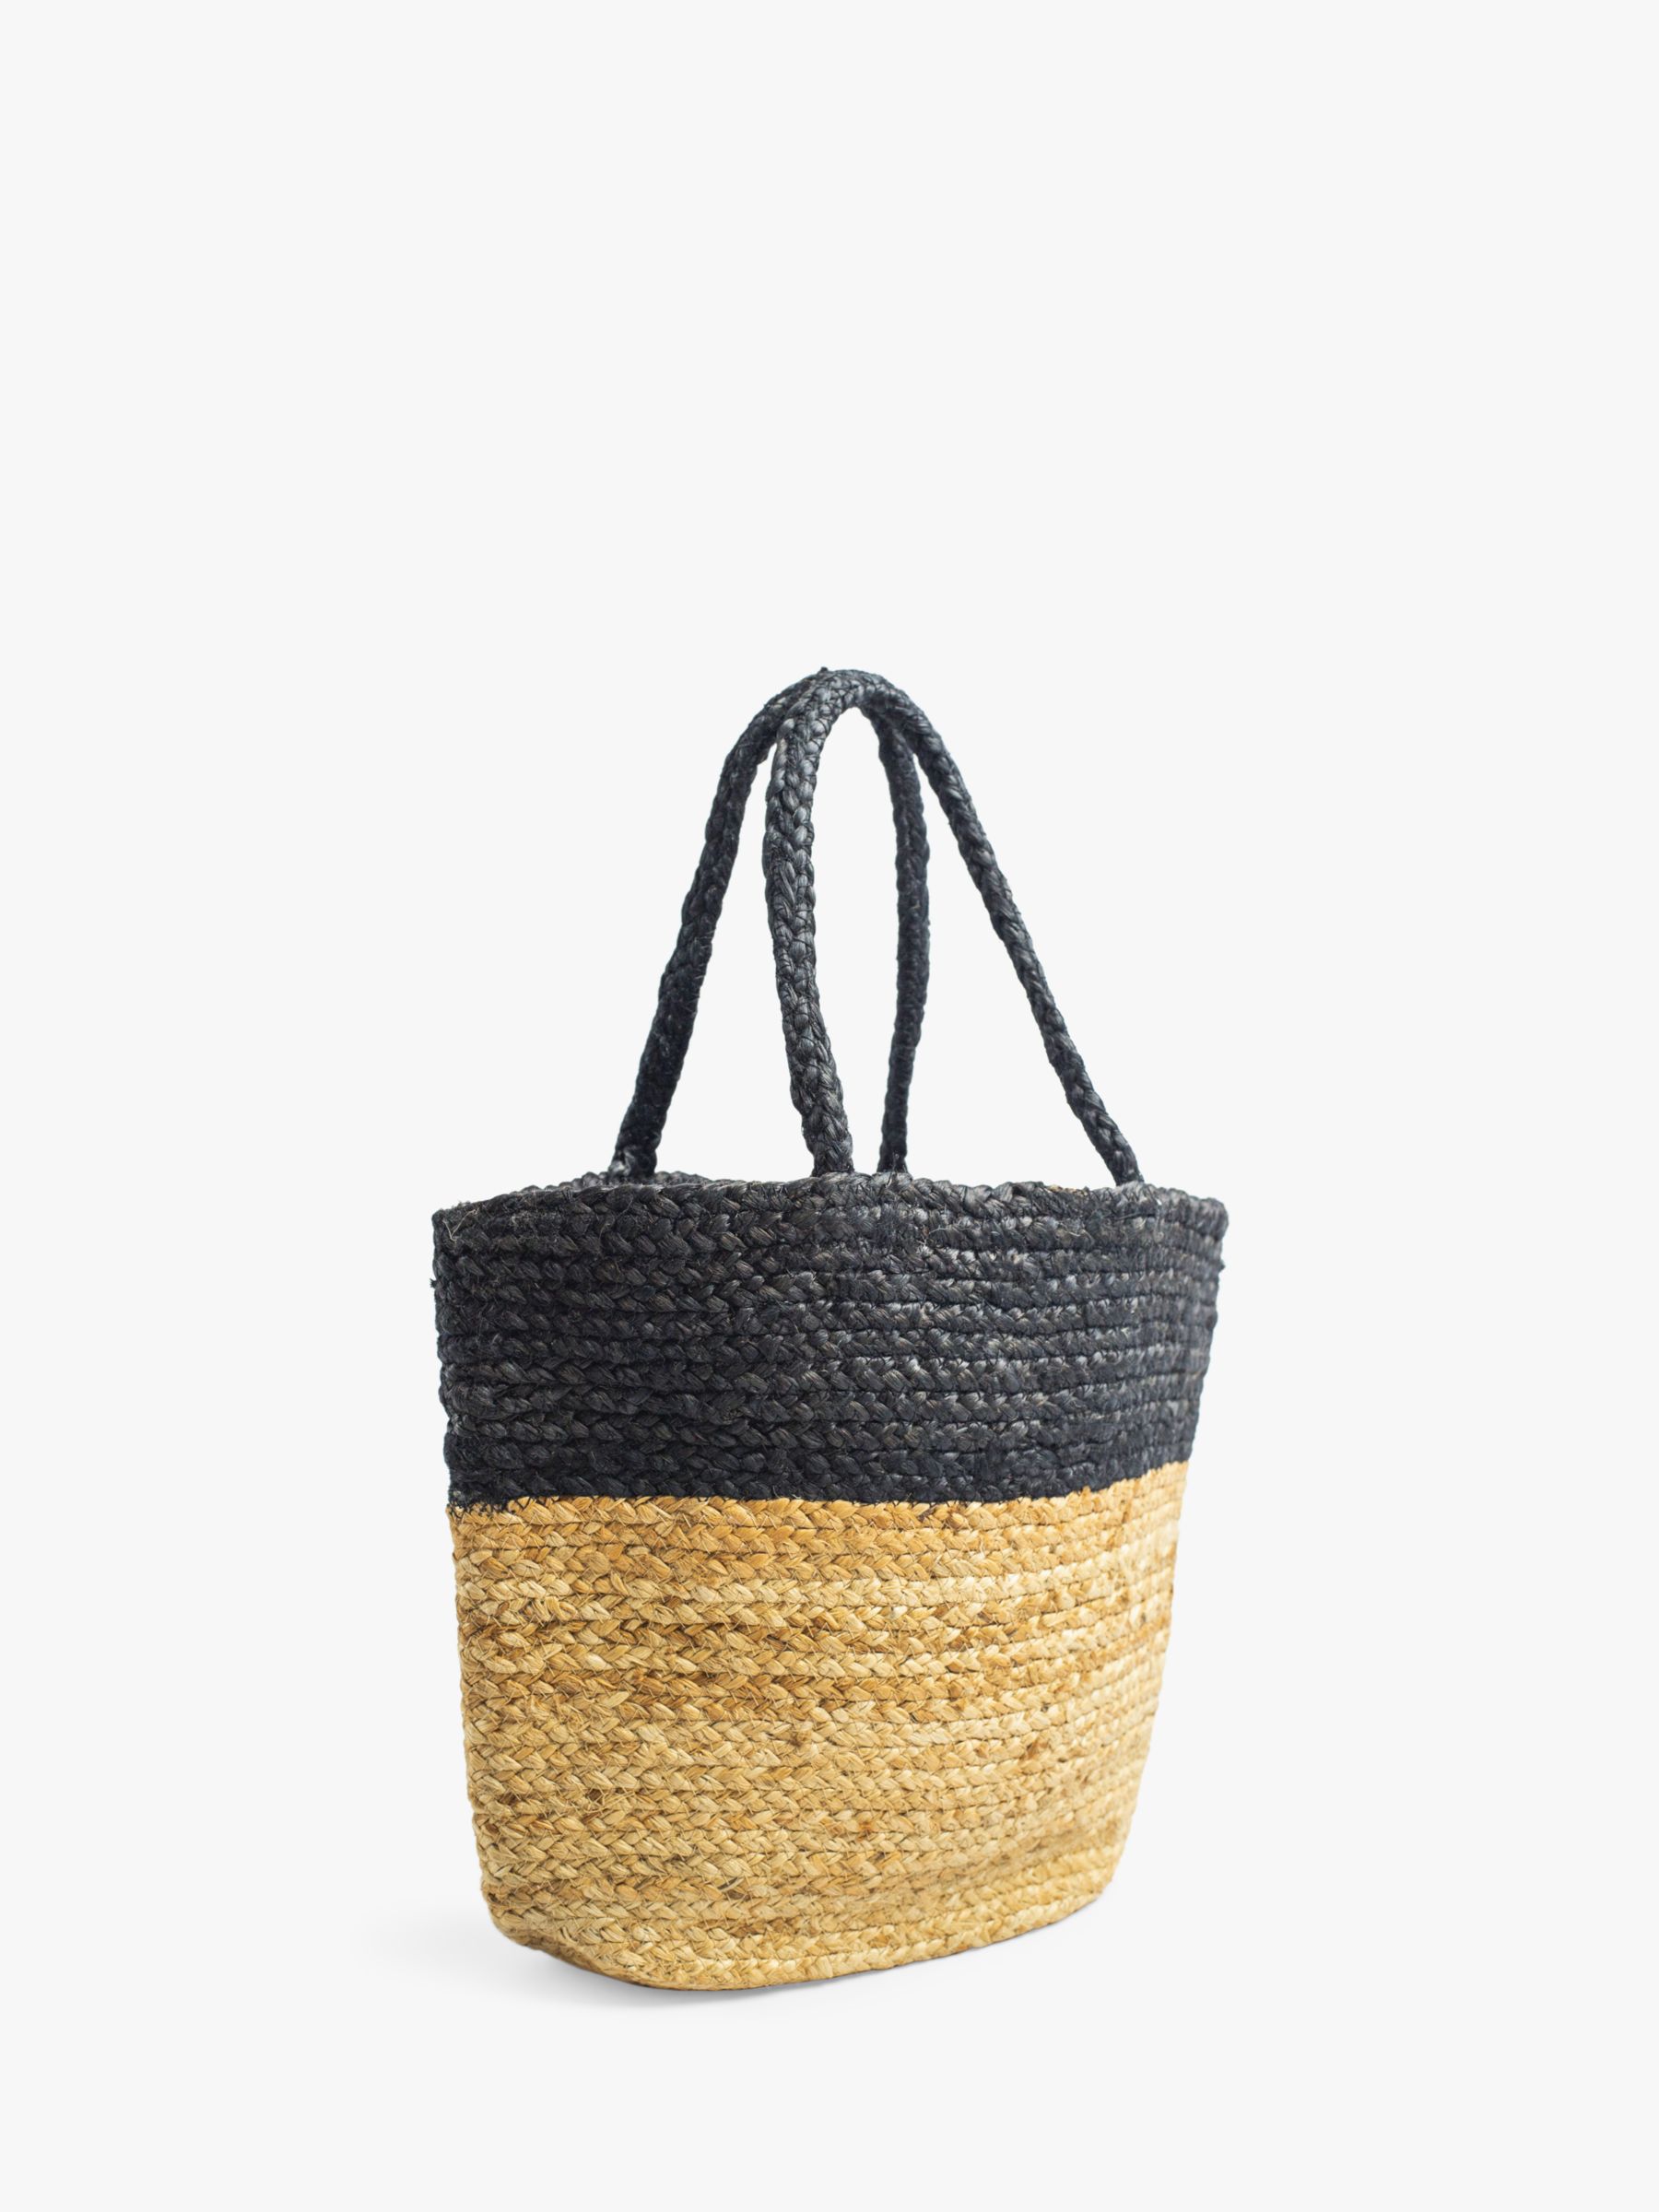 Bloom & Bay Veryan Colour Block Jute Tote Bag, Natural/Black, One Size